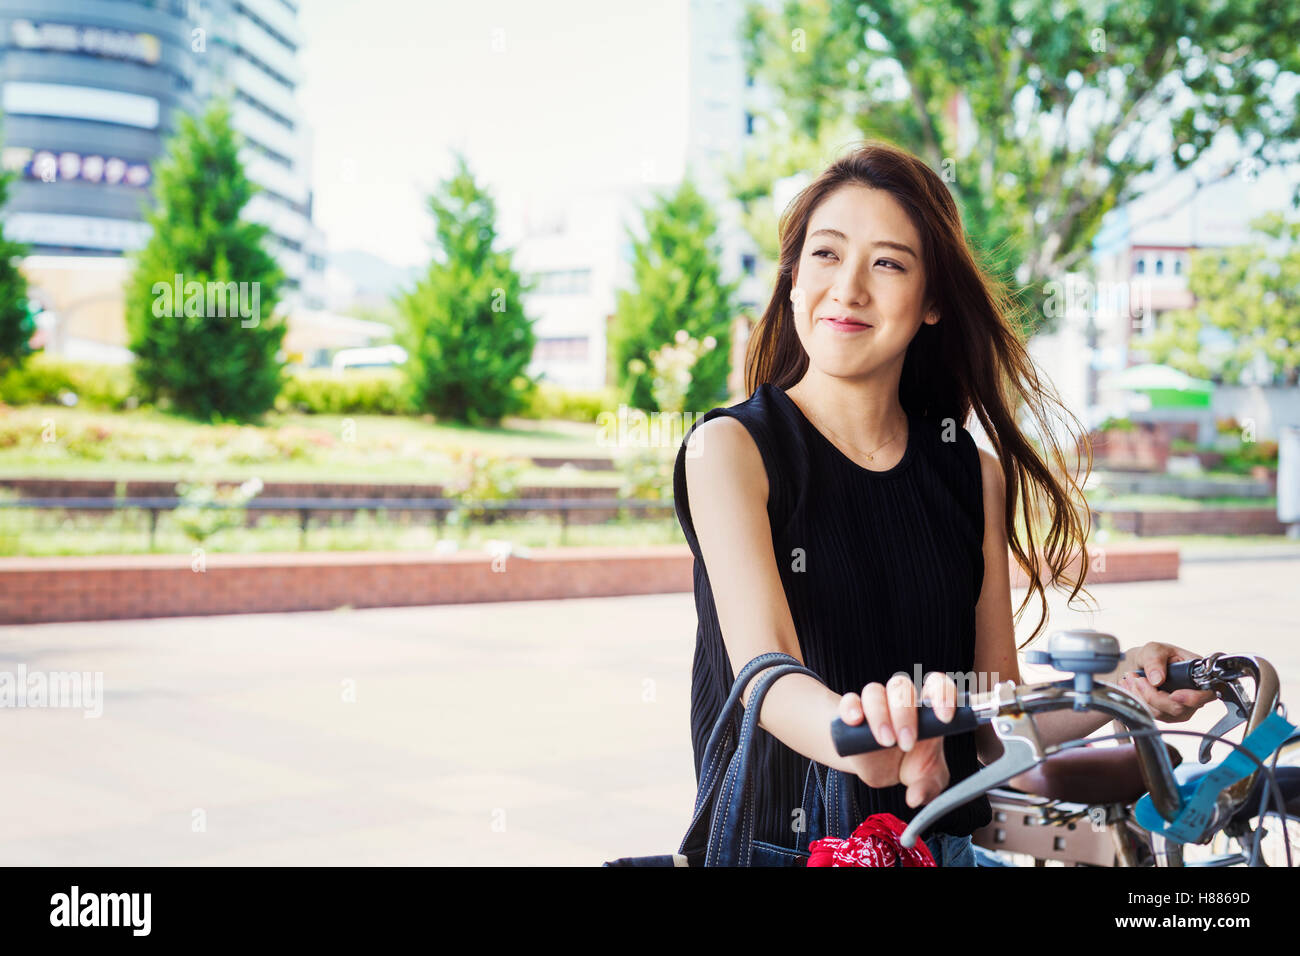 Mujer sonriente con cabello marrón largo de pie junto a una bicicleta. Foto de stock